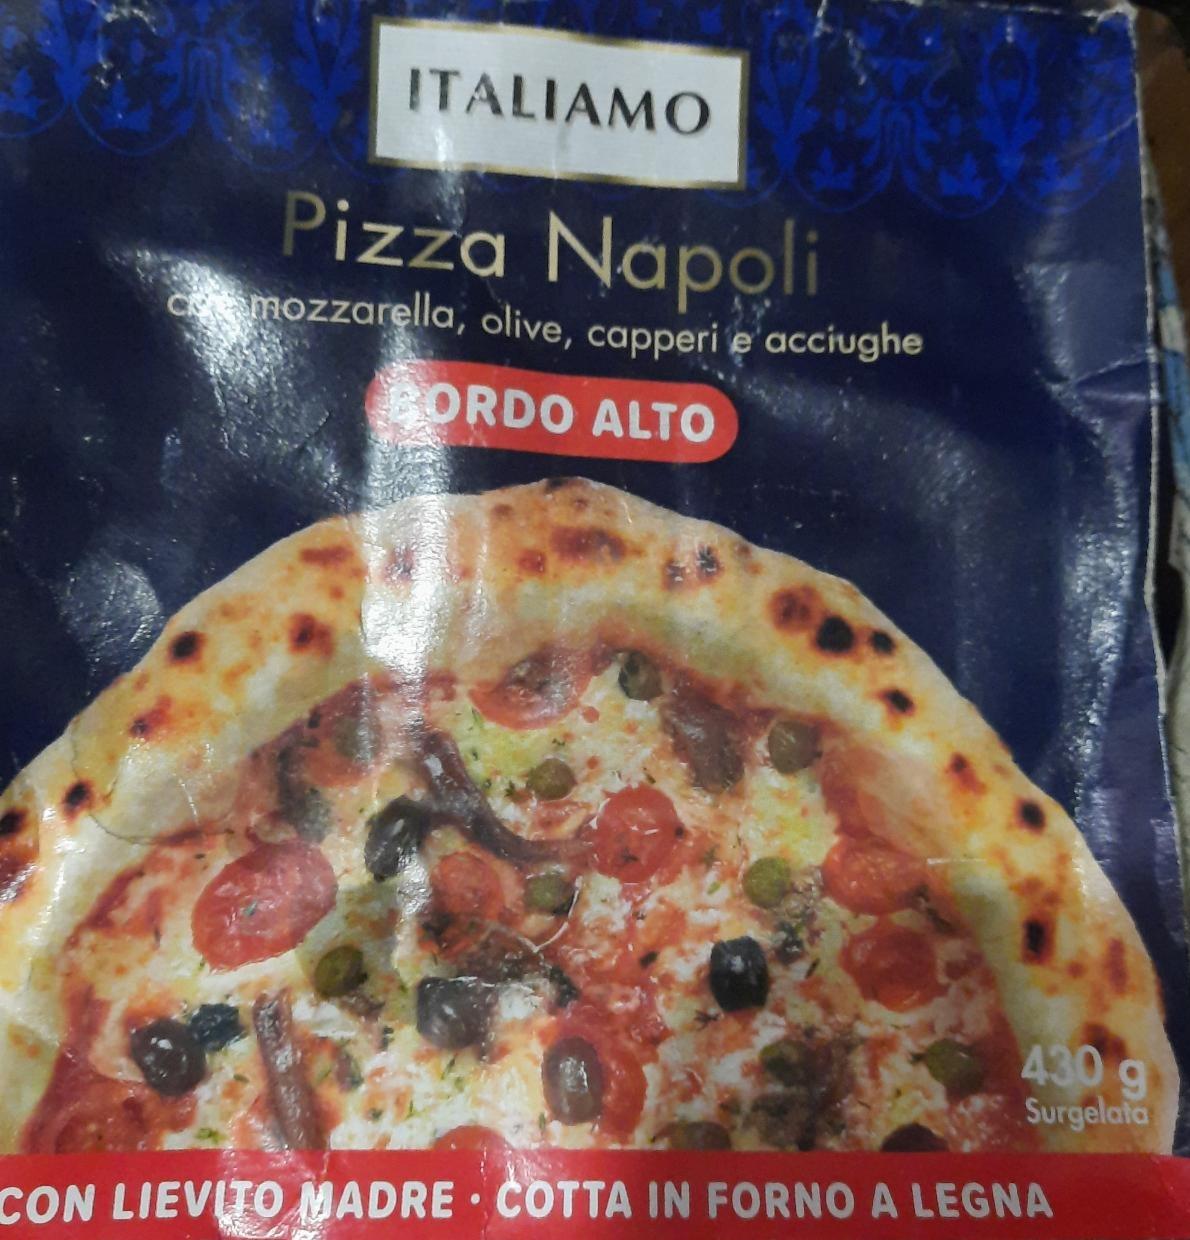 Фото - Pizza Napoli Bordo Alto Italiamo